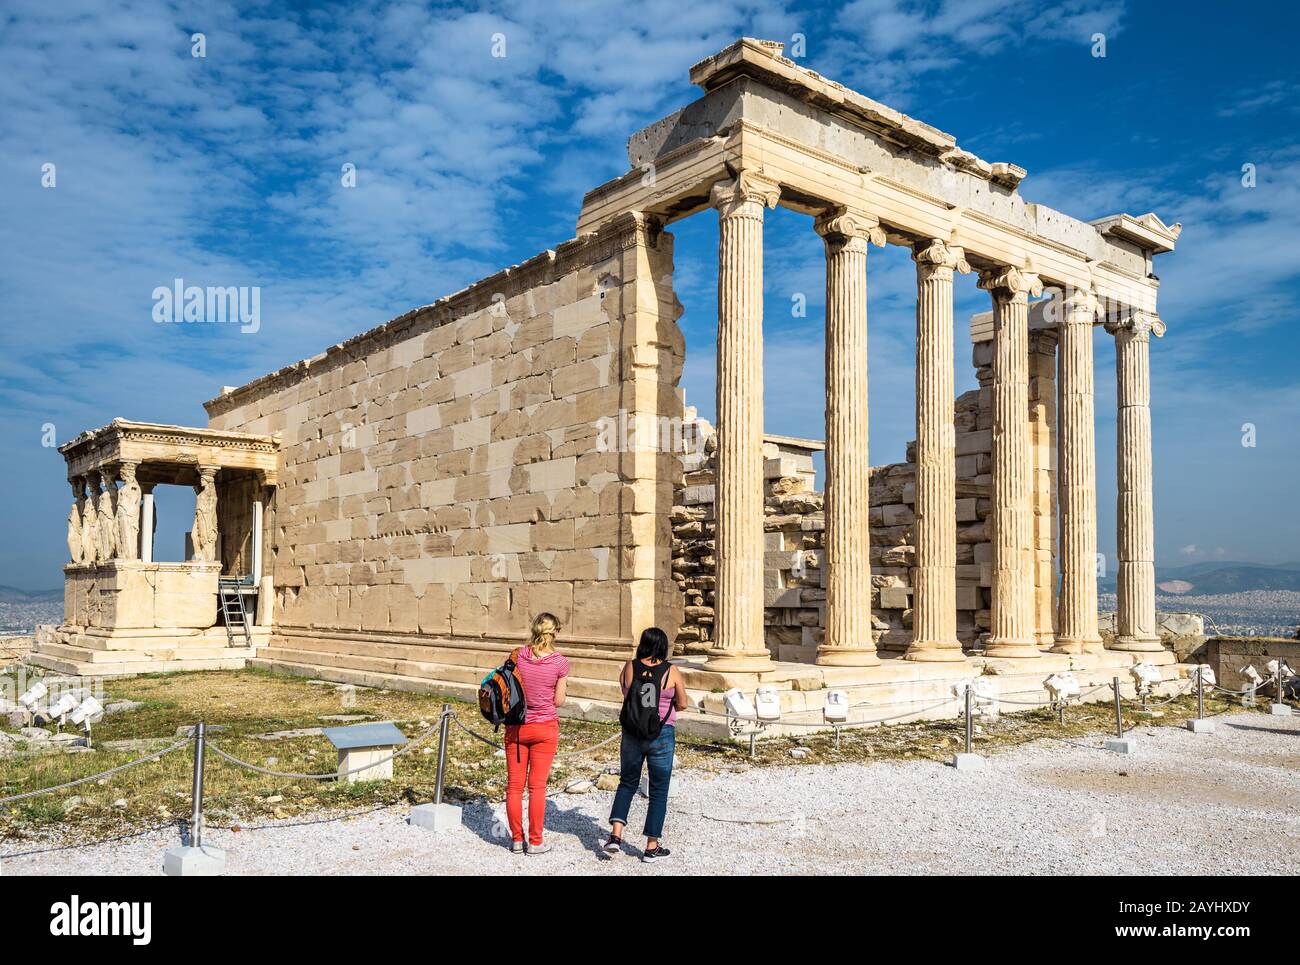 Athen - 8. Mai 2018: Tempel der Echtheion mit Caryatid-Vorhalle auf der Akropolis von Athen, Griechenland. Es ist eine Touristenattraktion Athens. Die Leute schauen auf Anci Stockfoto